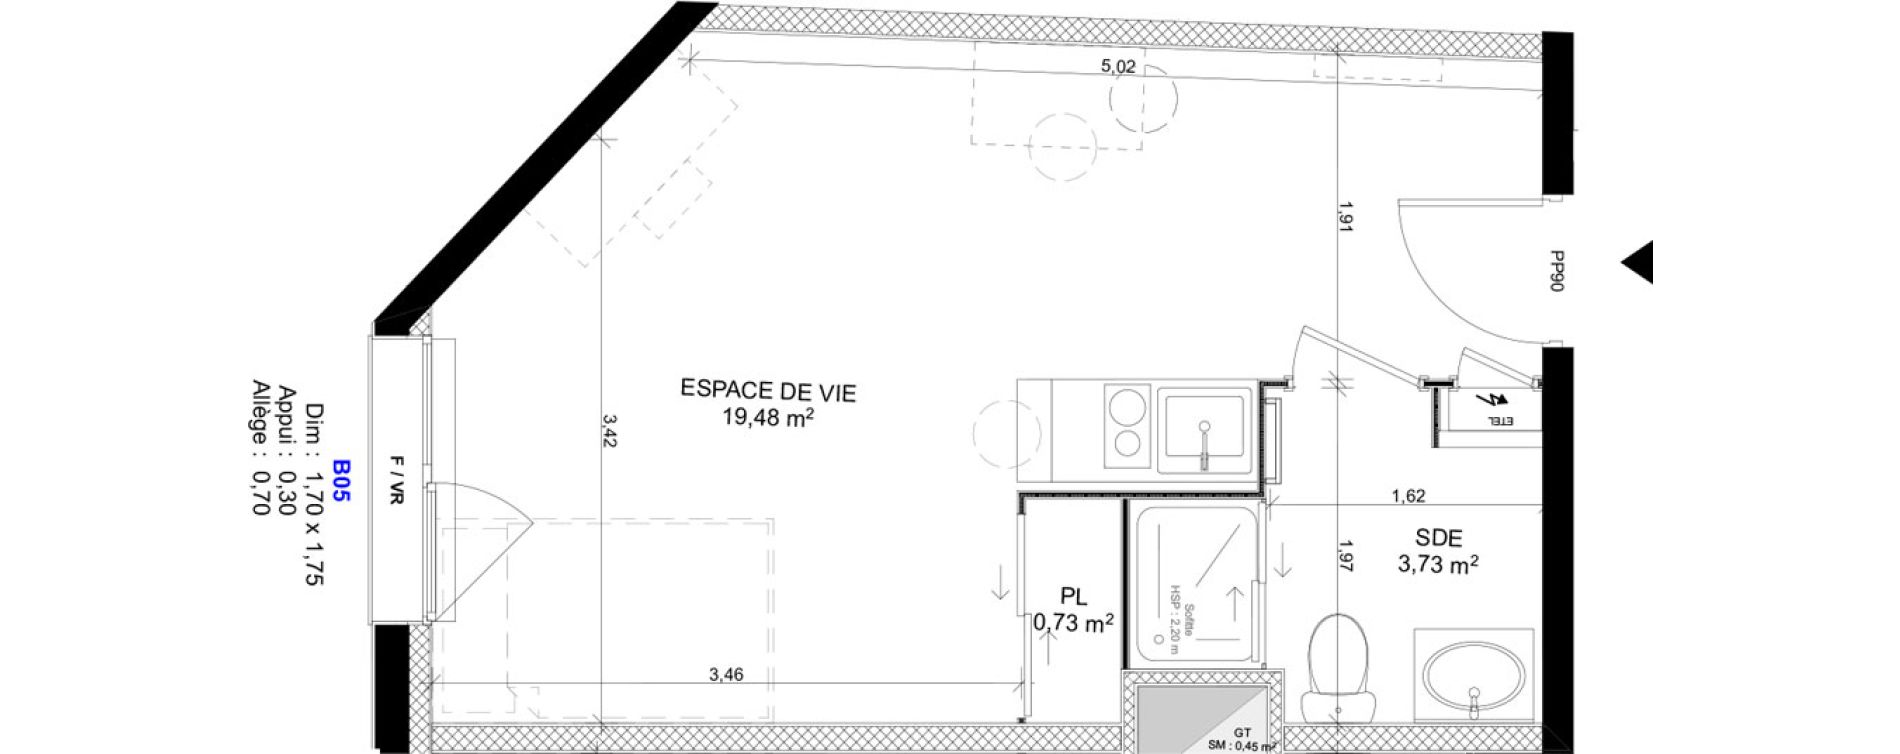 Appartement T1 meubl&eacute; de 23,94 m2 au Havre Sainte marie - saint leon